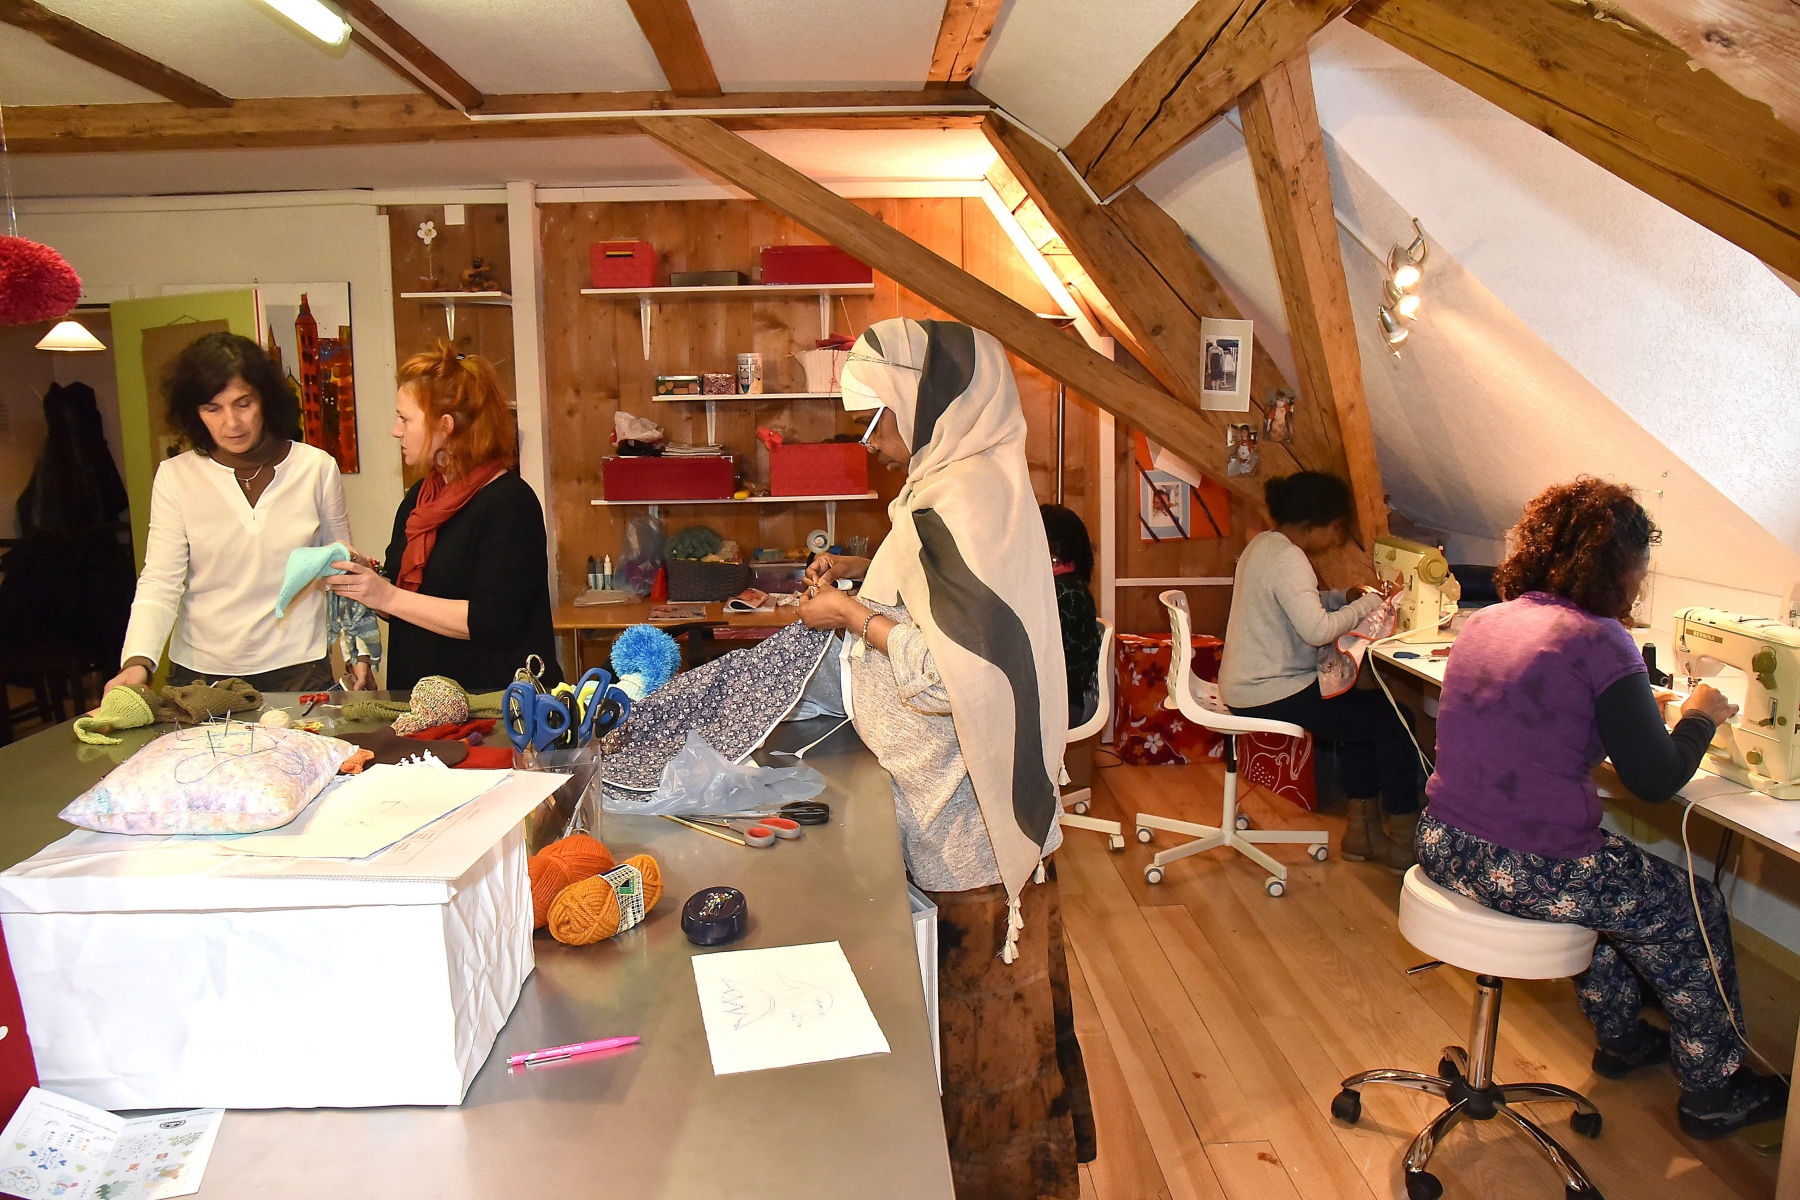 Atelier Fil  unite de reinsertion pour migrantes a gauche la directrice MF Oberbeck et la prof de couture
Fleurier 3 fevrier 2016
Photo R Leuenberger